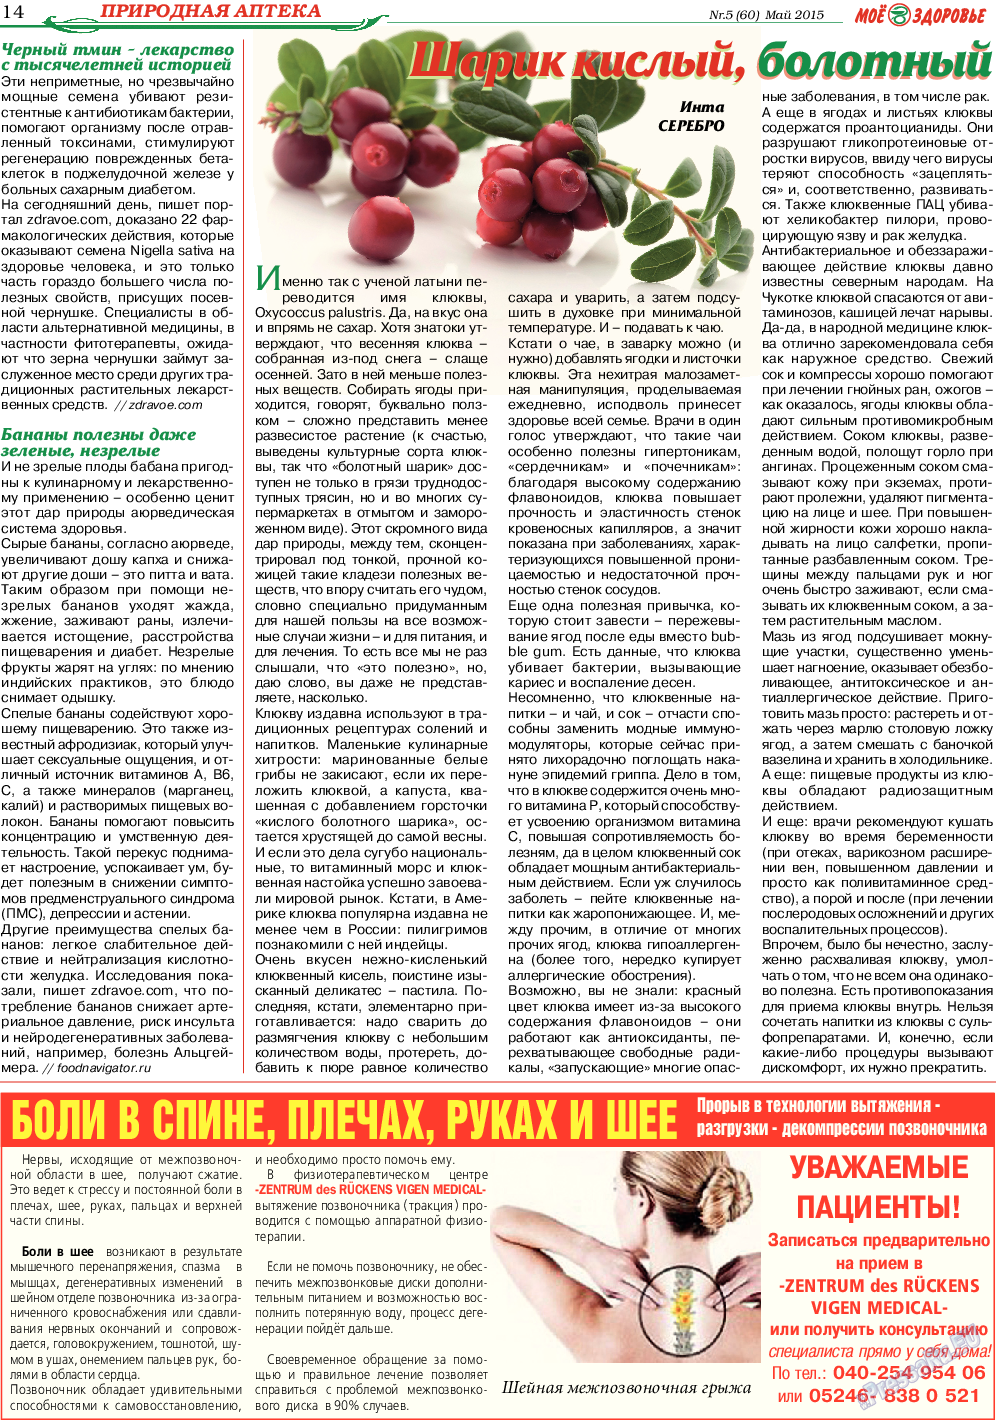 Кругозор (газета). 2015 год, номер 5, стр. 14